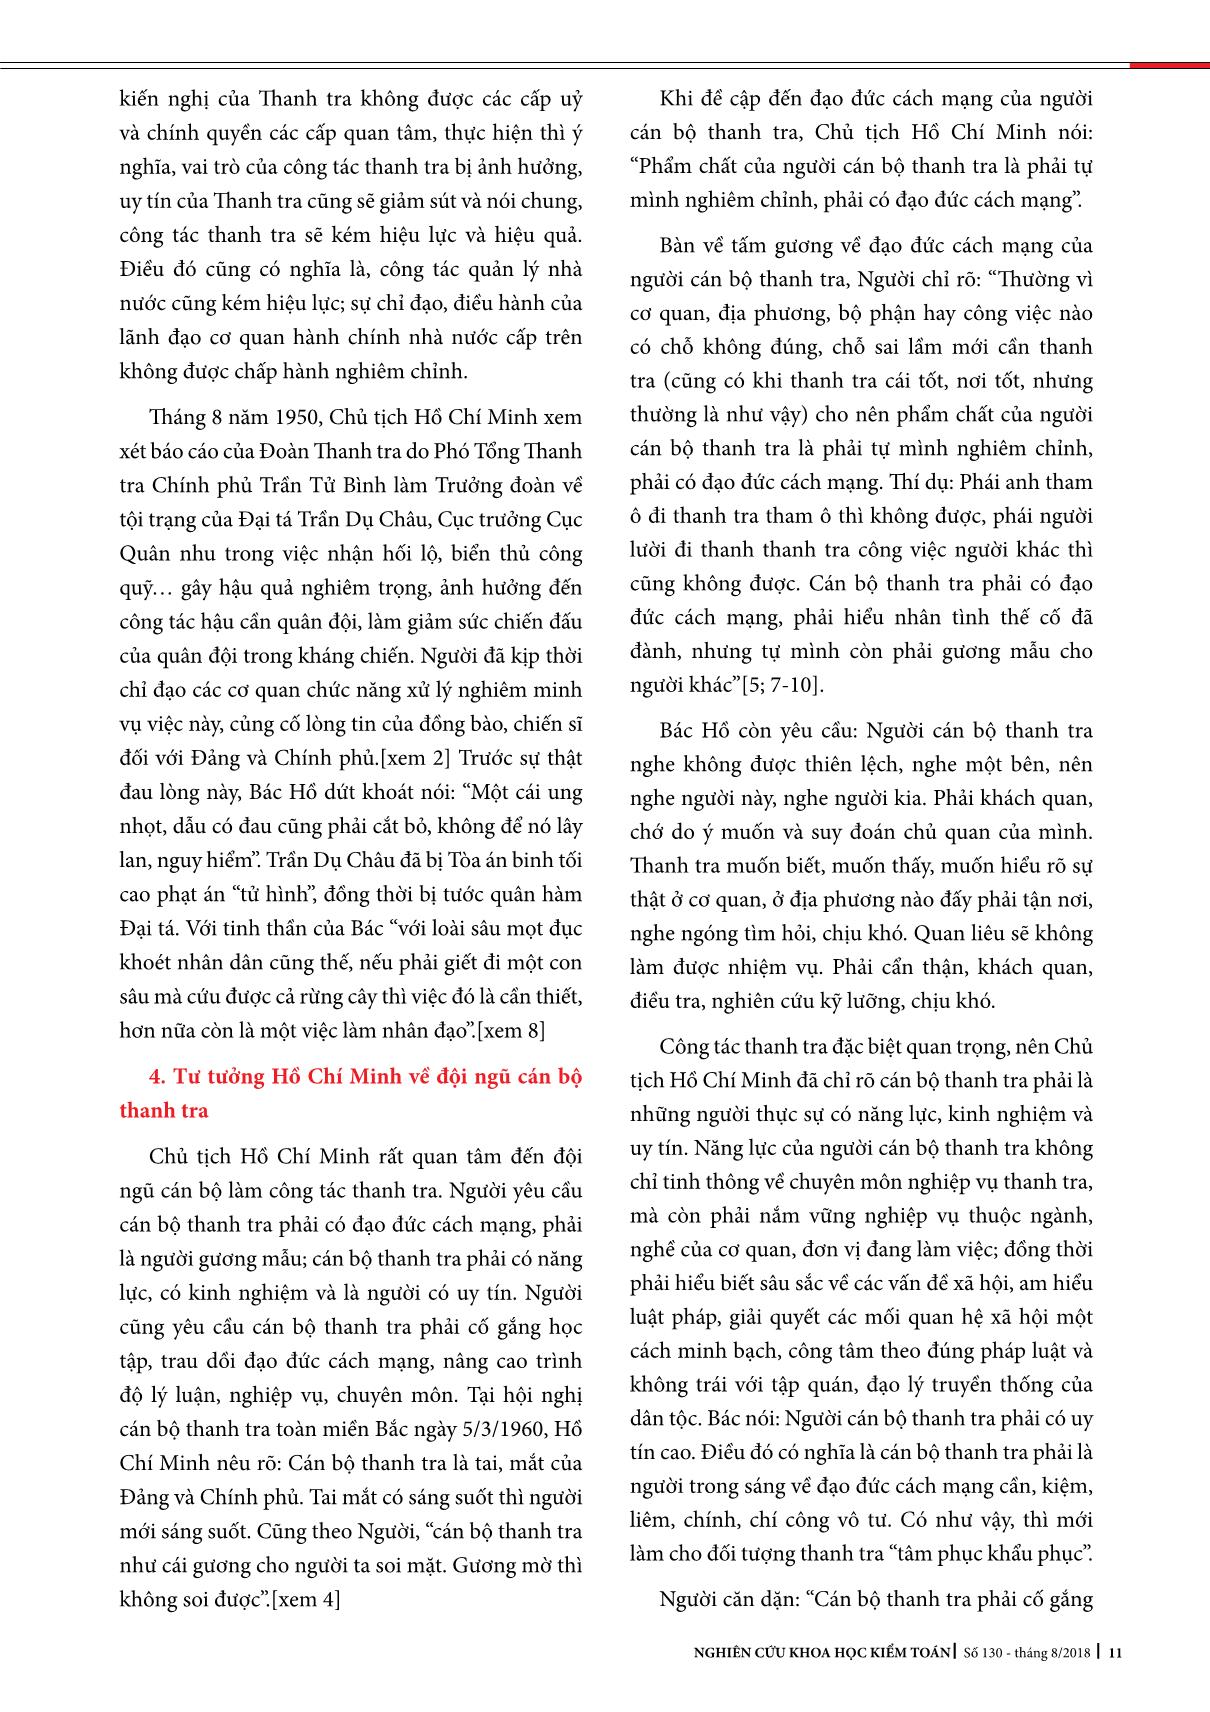 Tư tưởng Hồ Chí Minh về công tác thanh tra trang 6